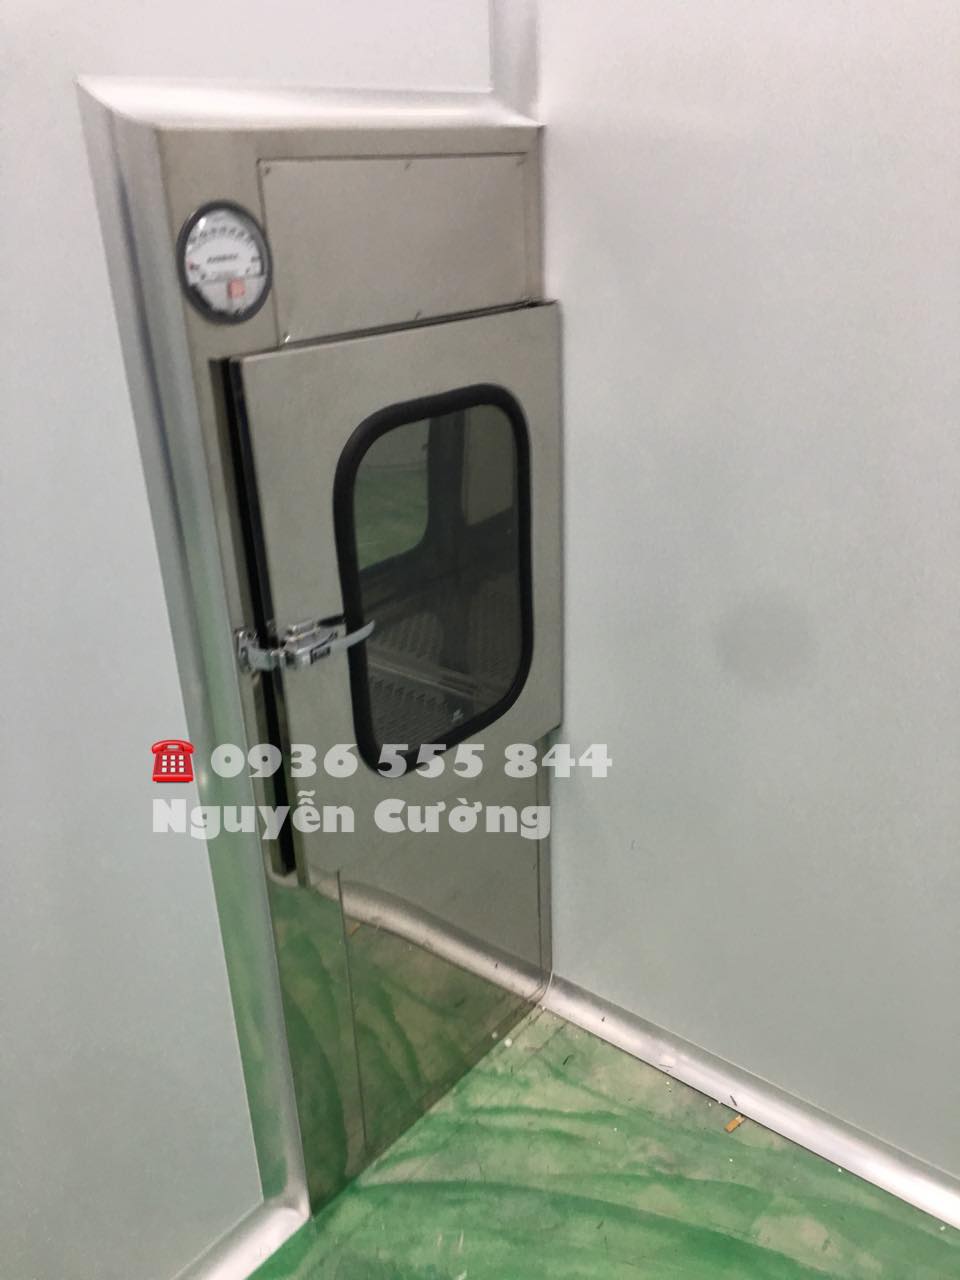 Chuyên sản xuất lắp đặt pass box with air shower cho phòng sạch